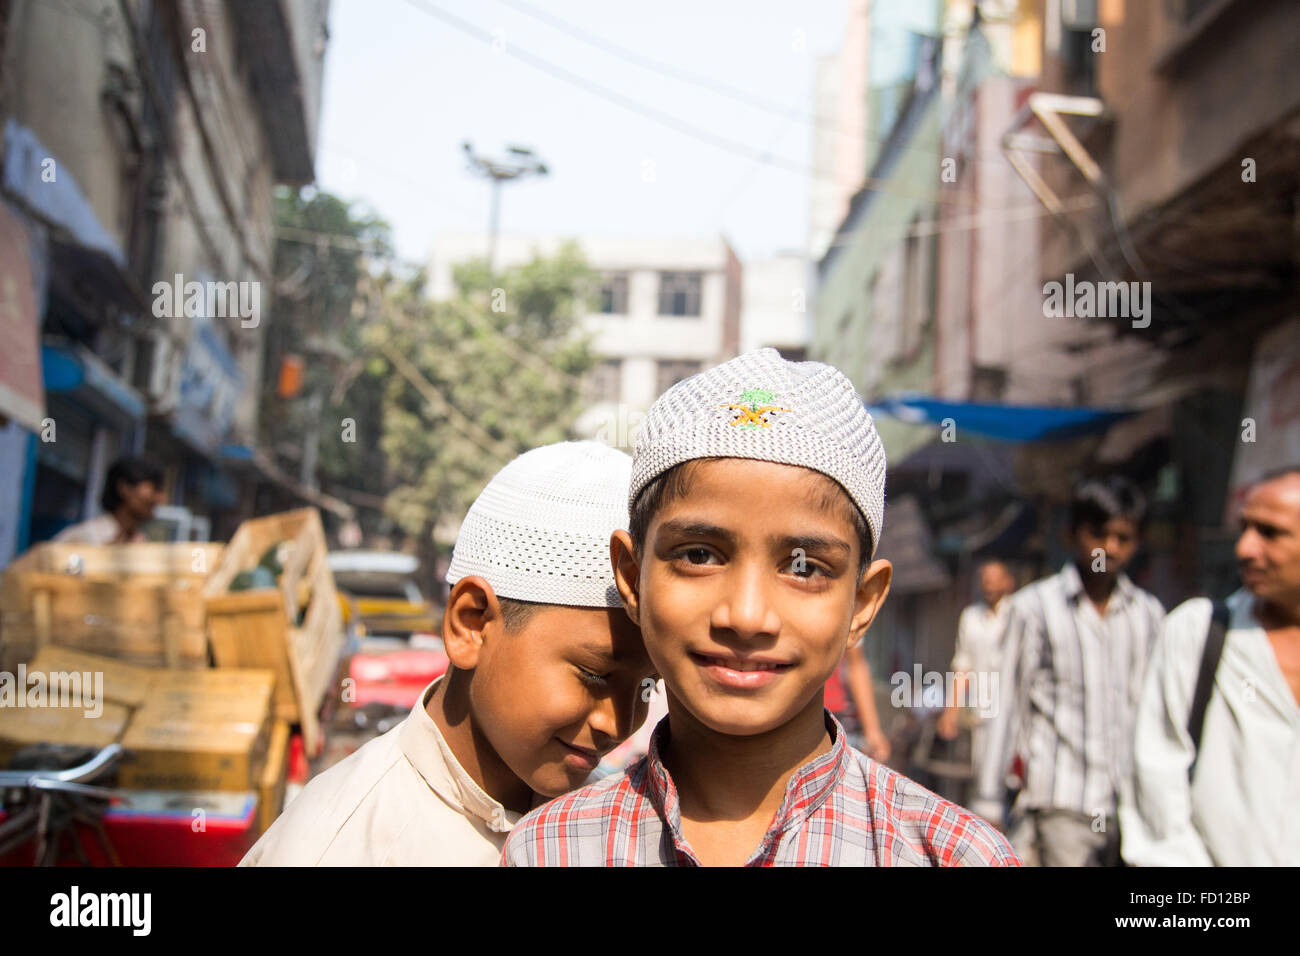 Muslim boys in Old Delhi, India Stock Photo